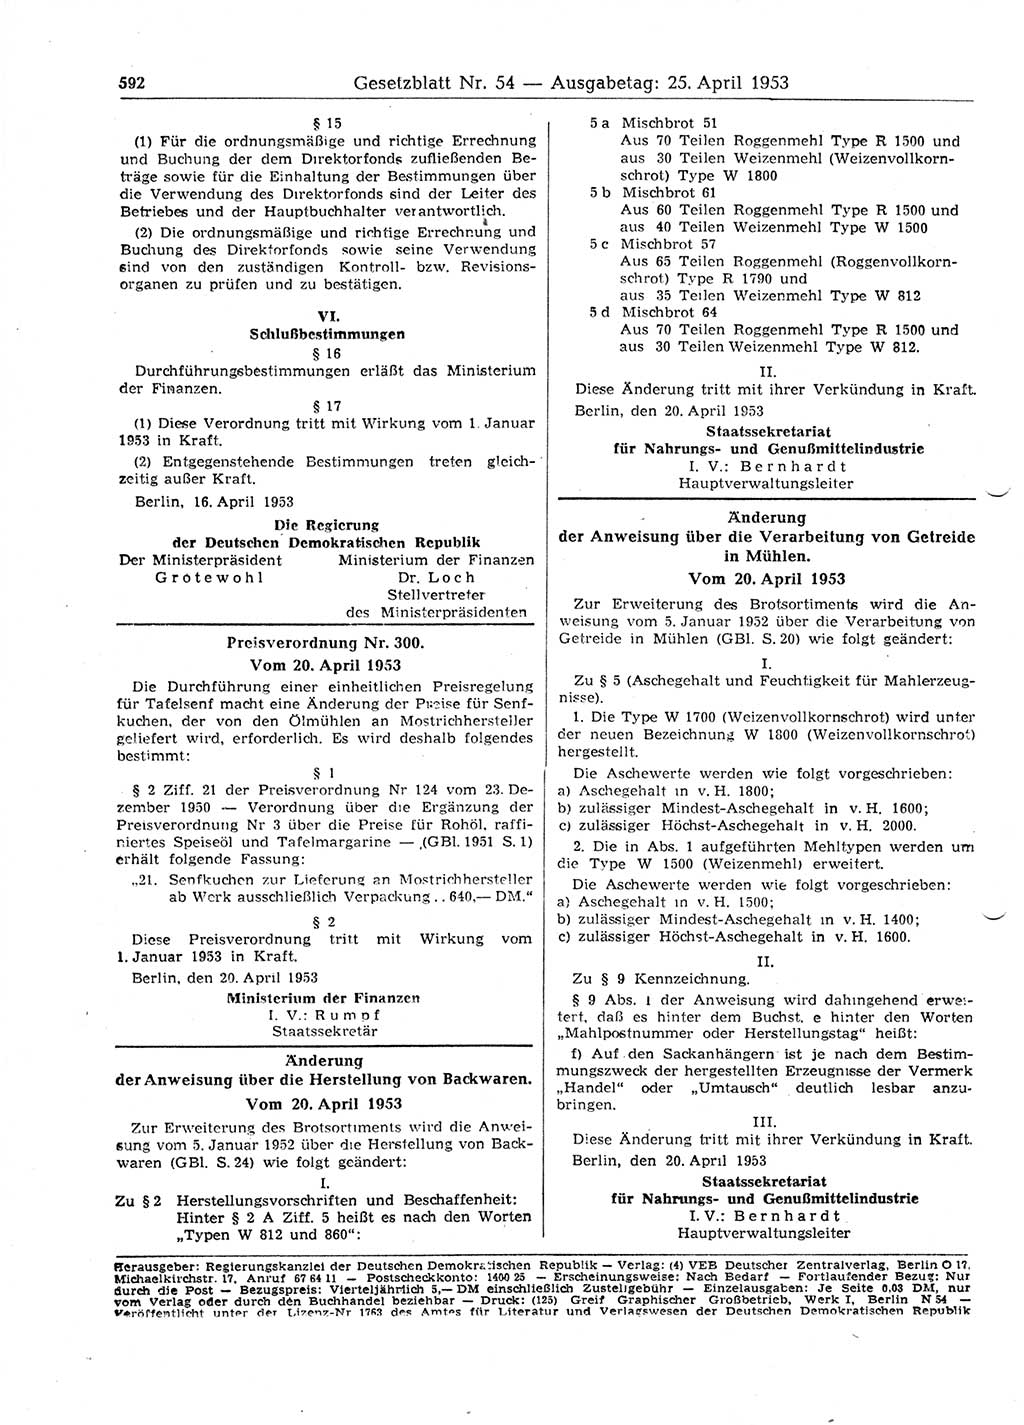 Gesetzblatt (GBl.) der Deutschen Demokratischen Republik (DDR) 1953, Seite 592 (GBl. DDR 1953, S. 592)